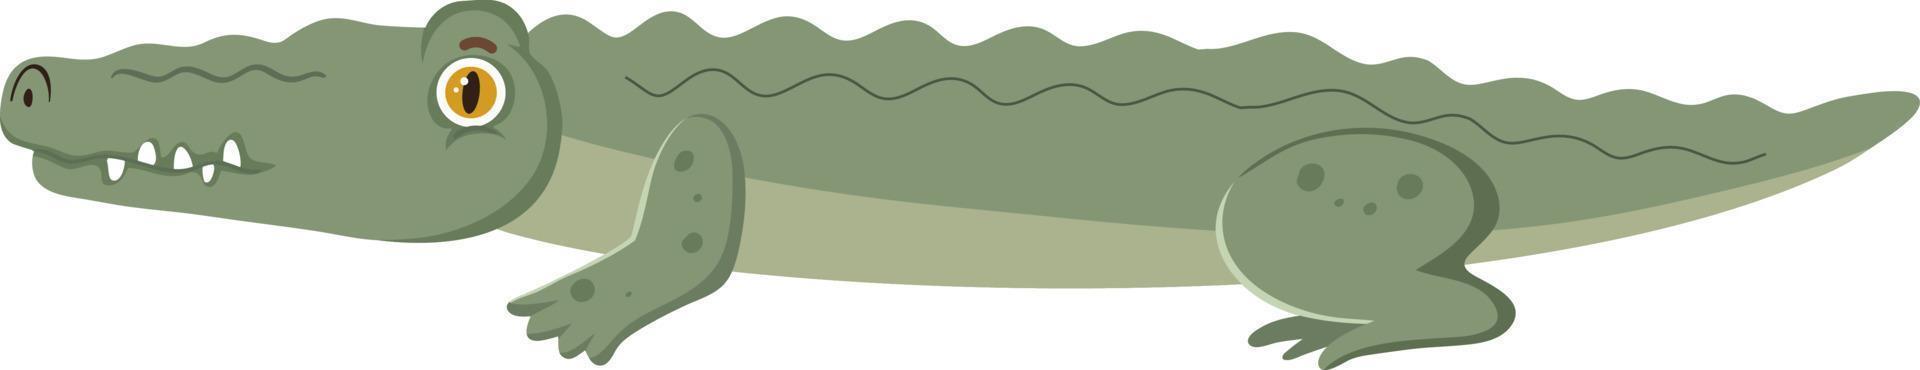 Seite des Krokodils im flachen Cartoon-Stil vektor